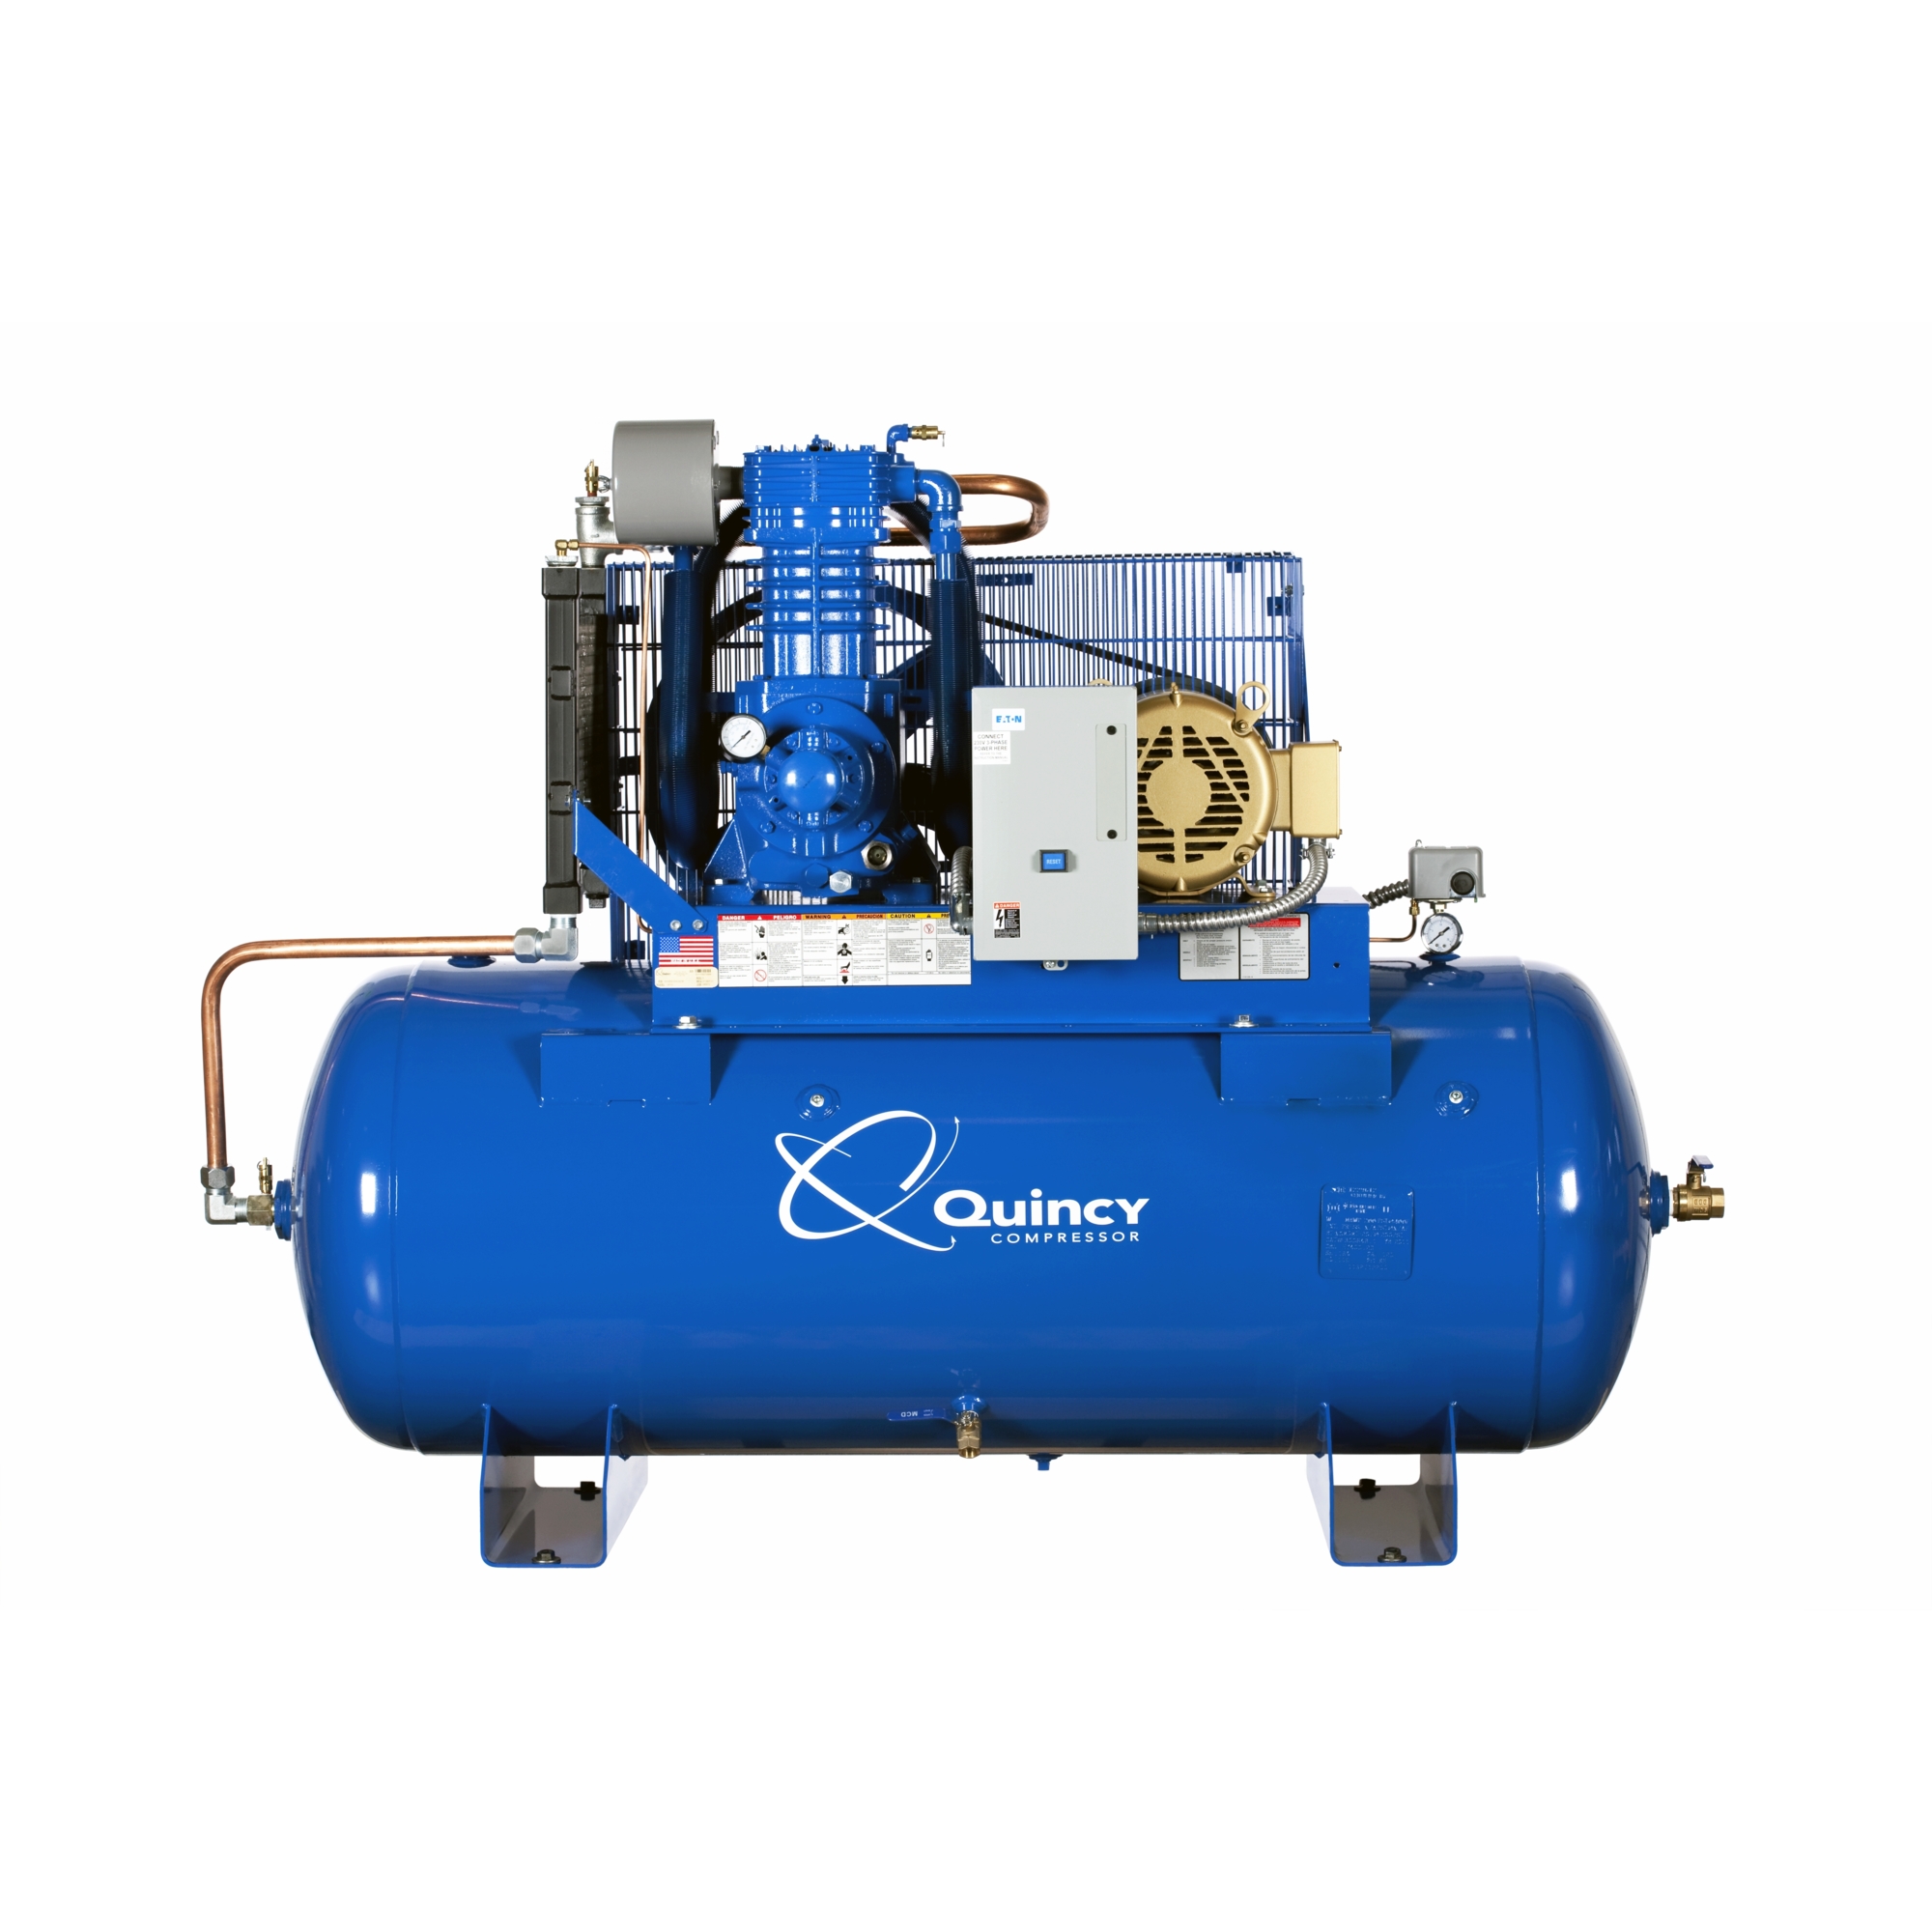 Quincy Compressor 2020040899